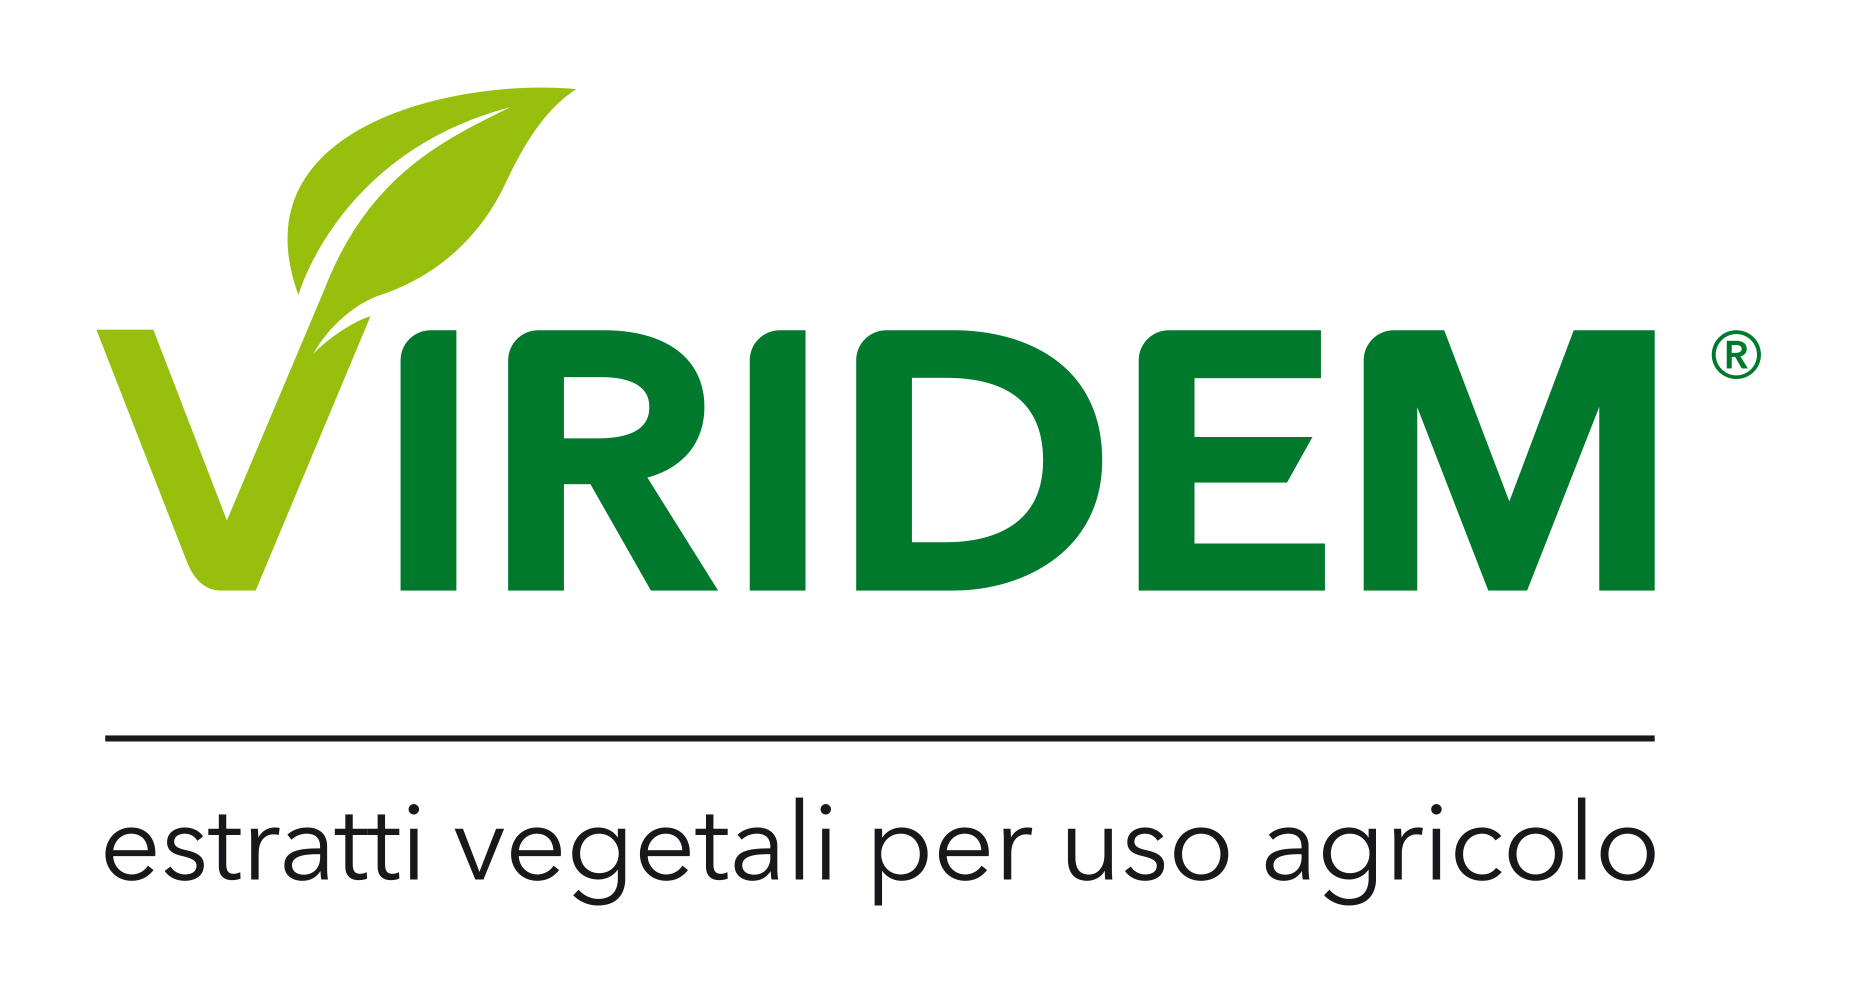 Marchio Viridem, Estratti vegetali per uso agricolo